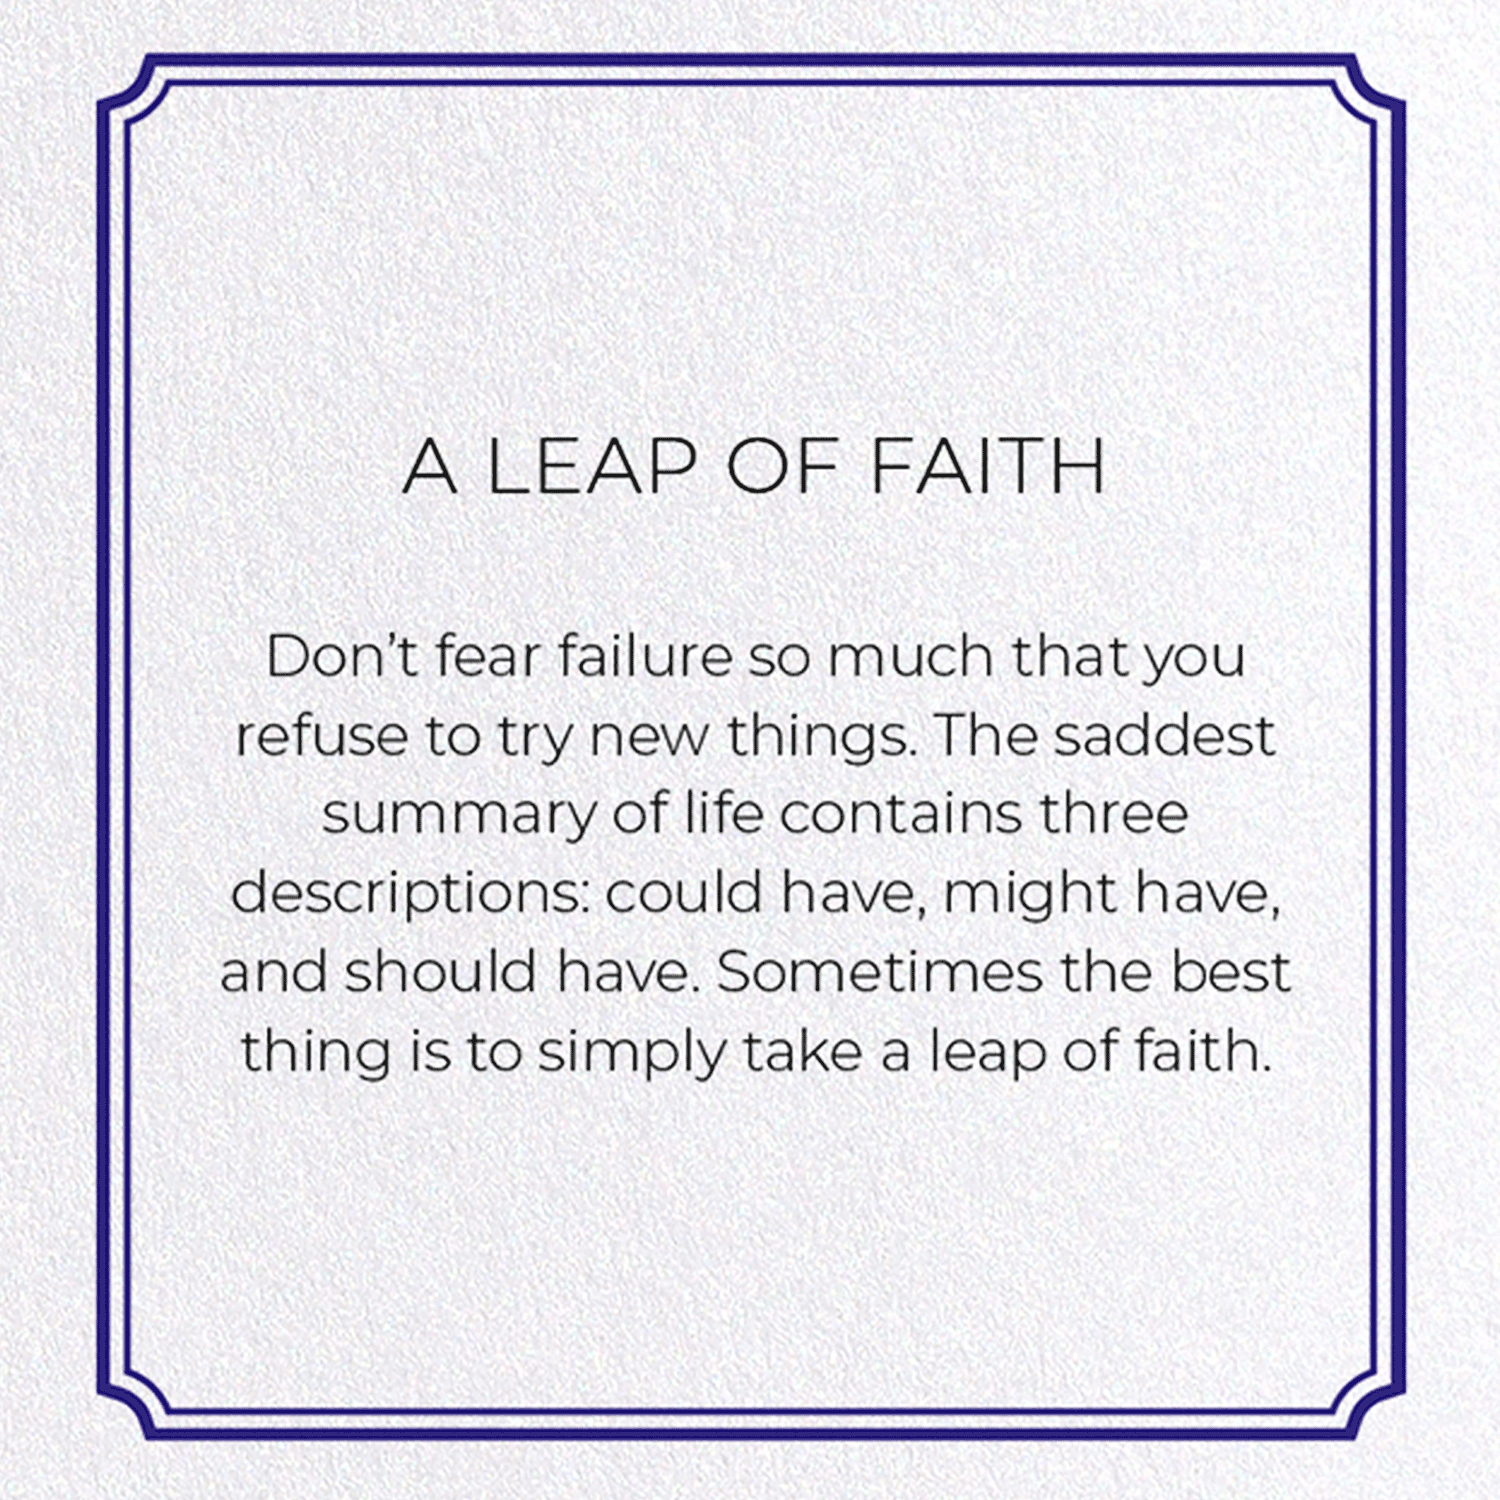 A LEAP OF FAITH